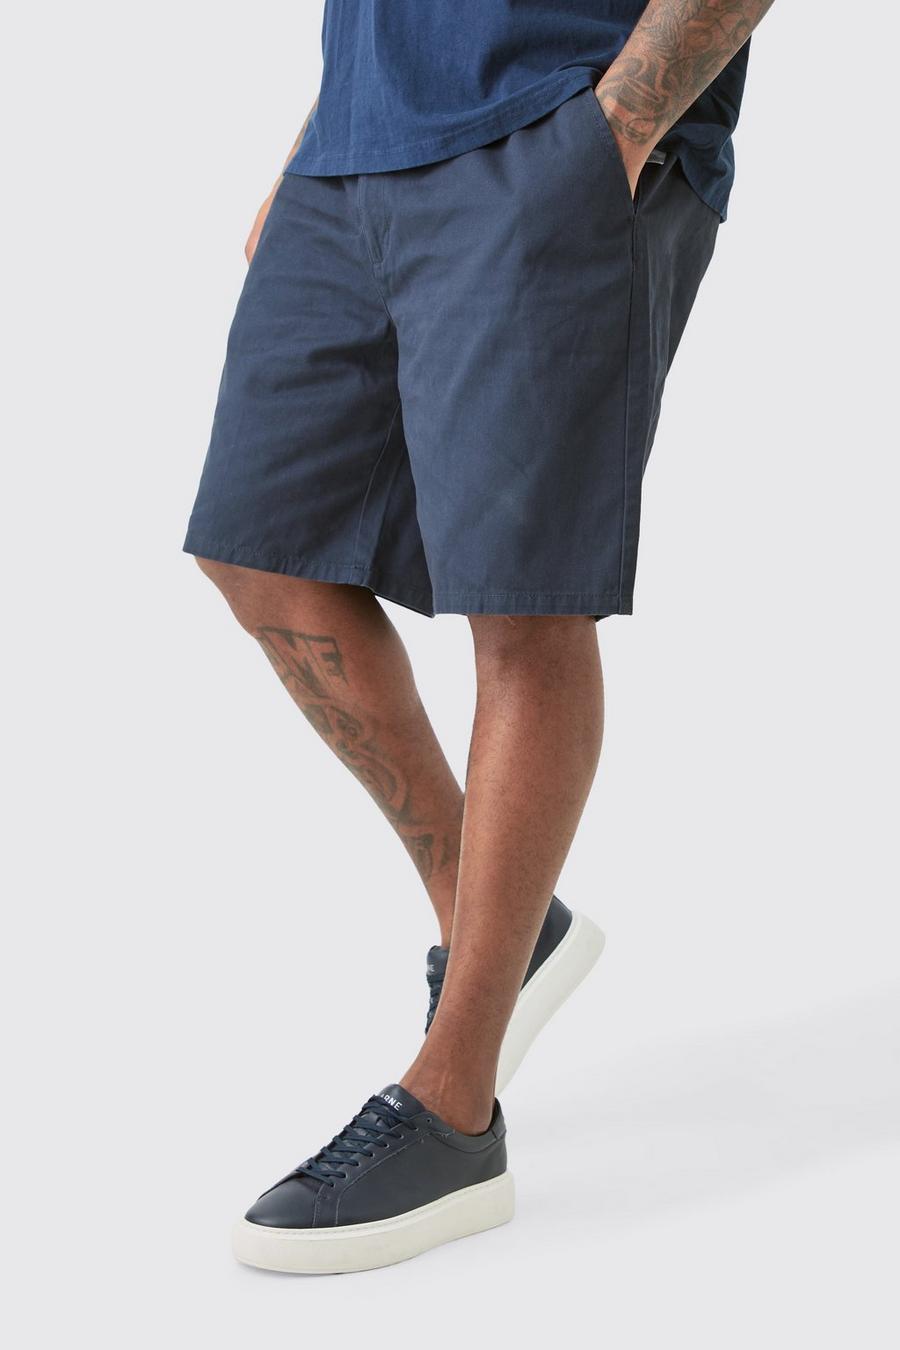 Pantalones cortos Plus holgados con cintura fija en azul marino, Navy